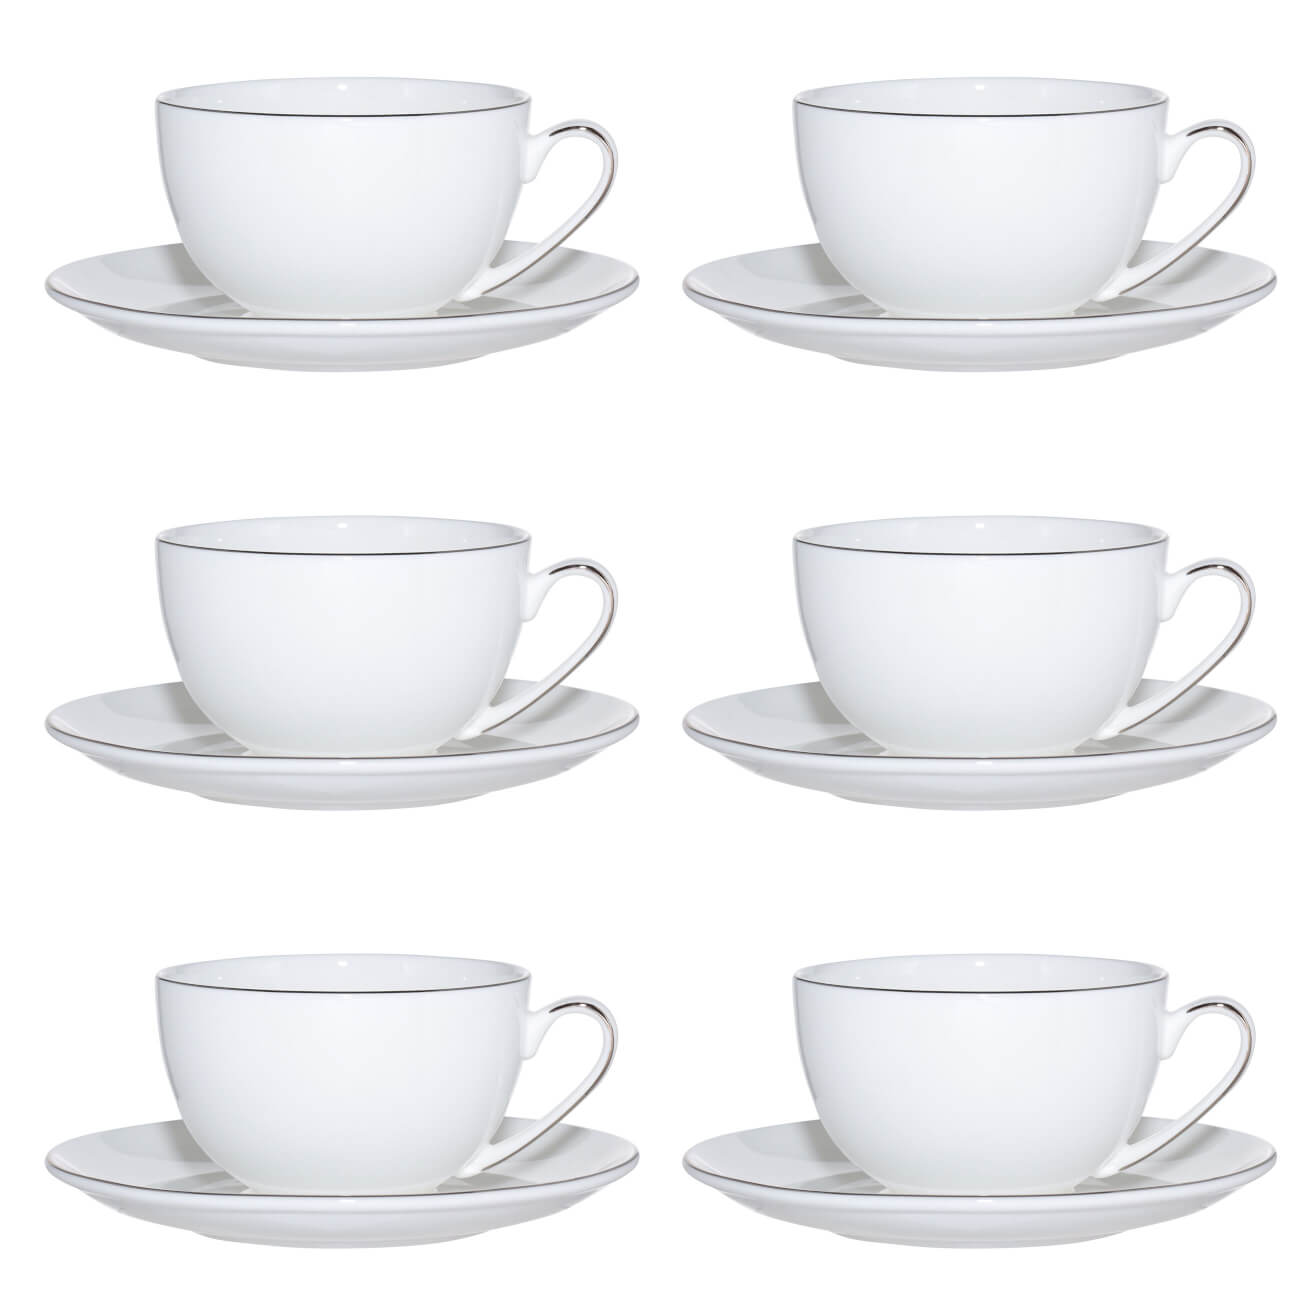 Пара чайная, 6 перс, 12 пр, 250 мл, фарфор F, Antarctica пара кофейная 2 перс 4 пр 90 мл фарфор f antarctica